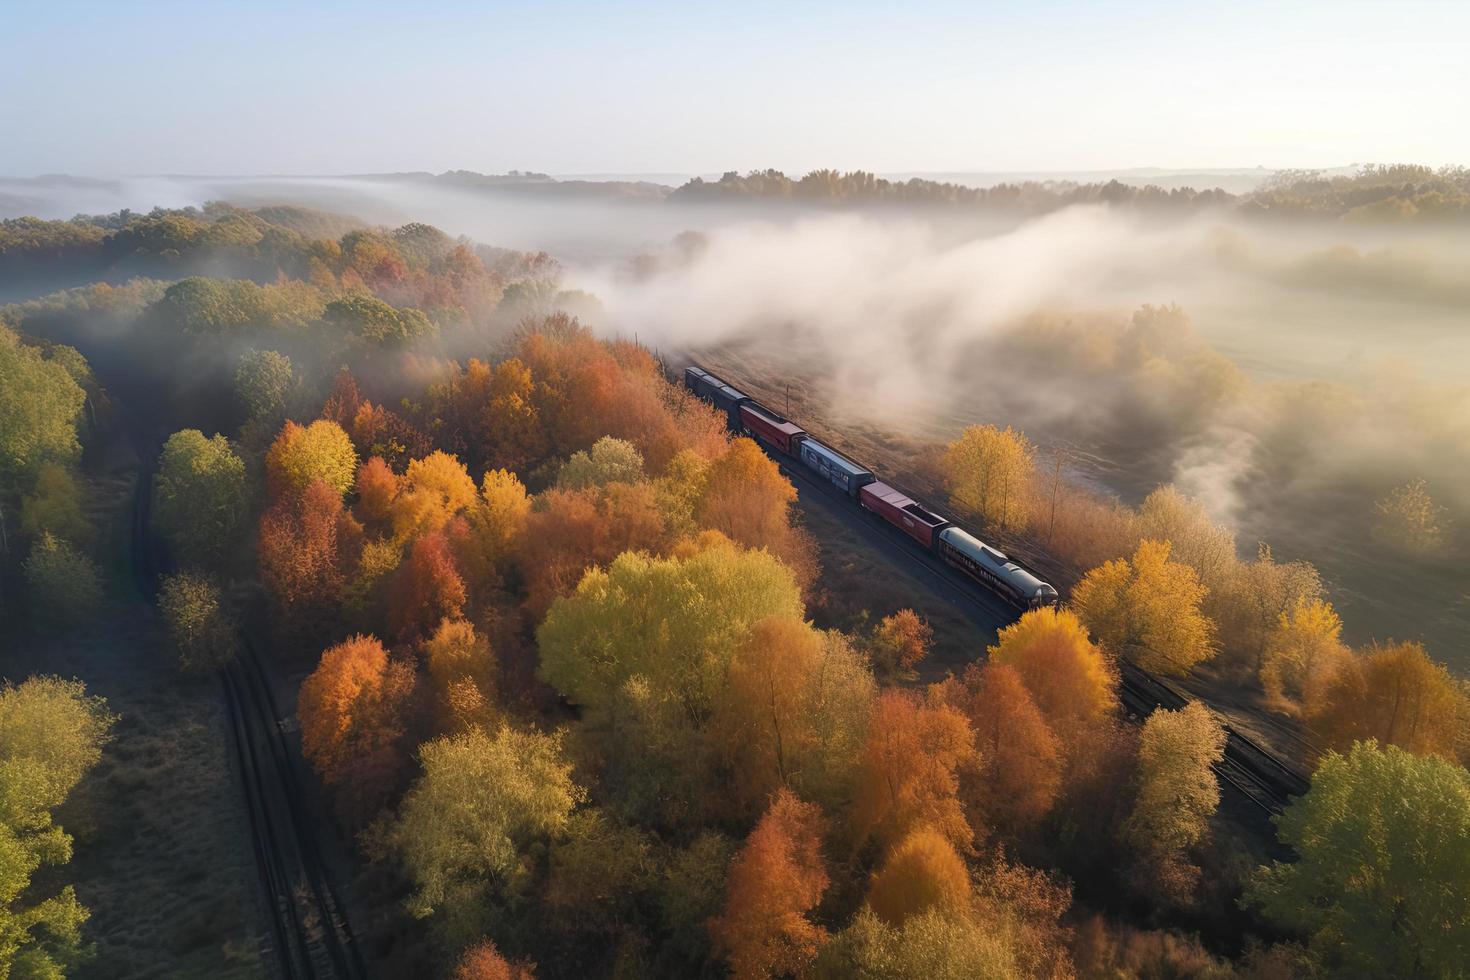 antenn se av frakt tåg i skön skog i dimma på soluppgång i höst. färgrik landskap med järnväg foto